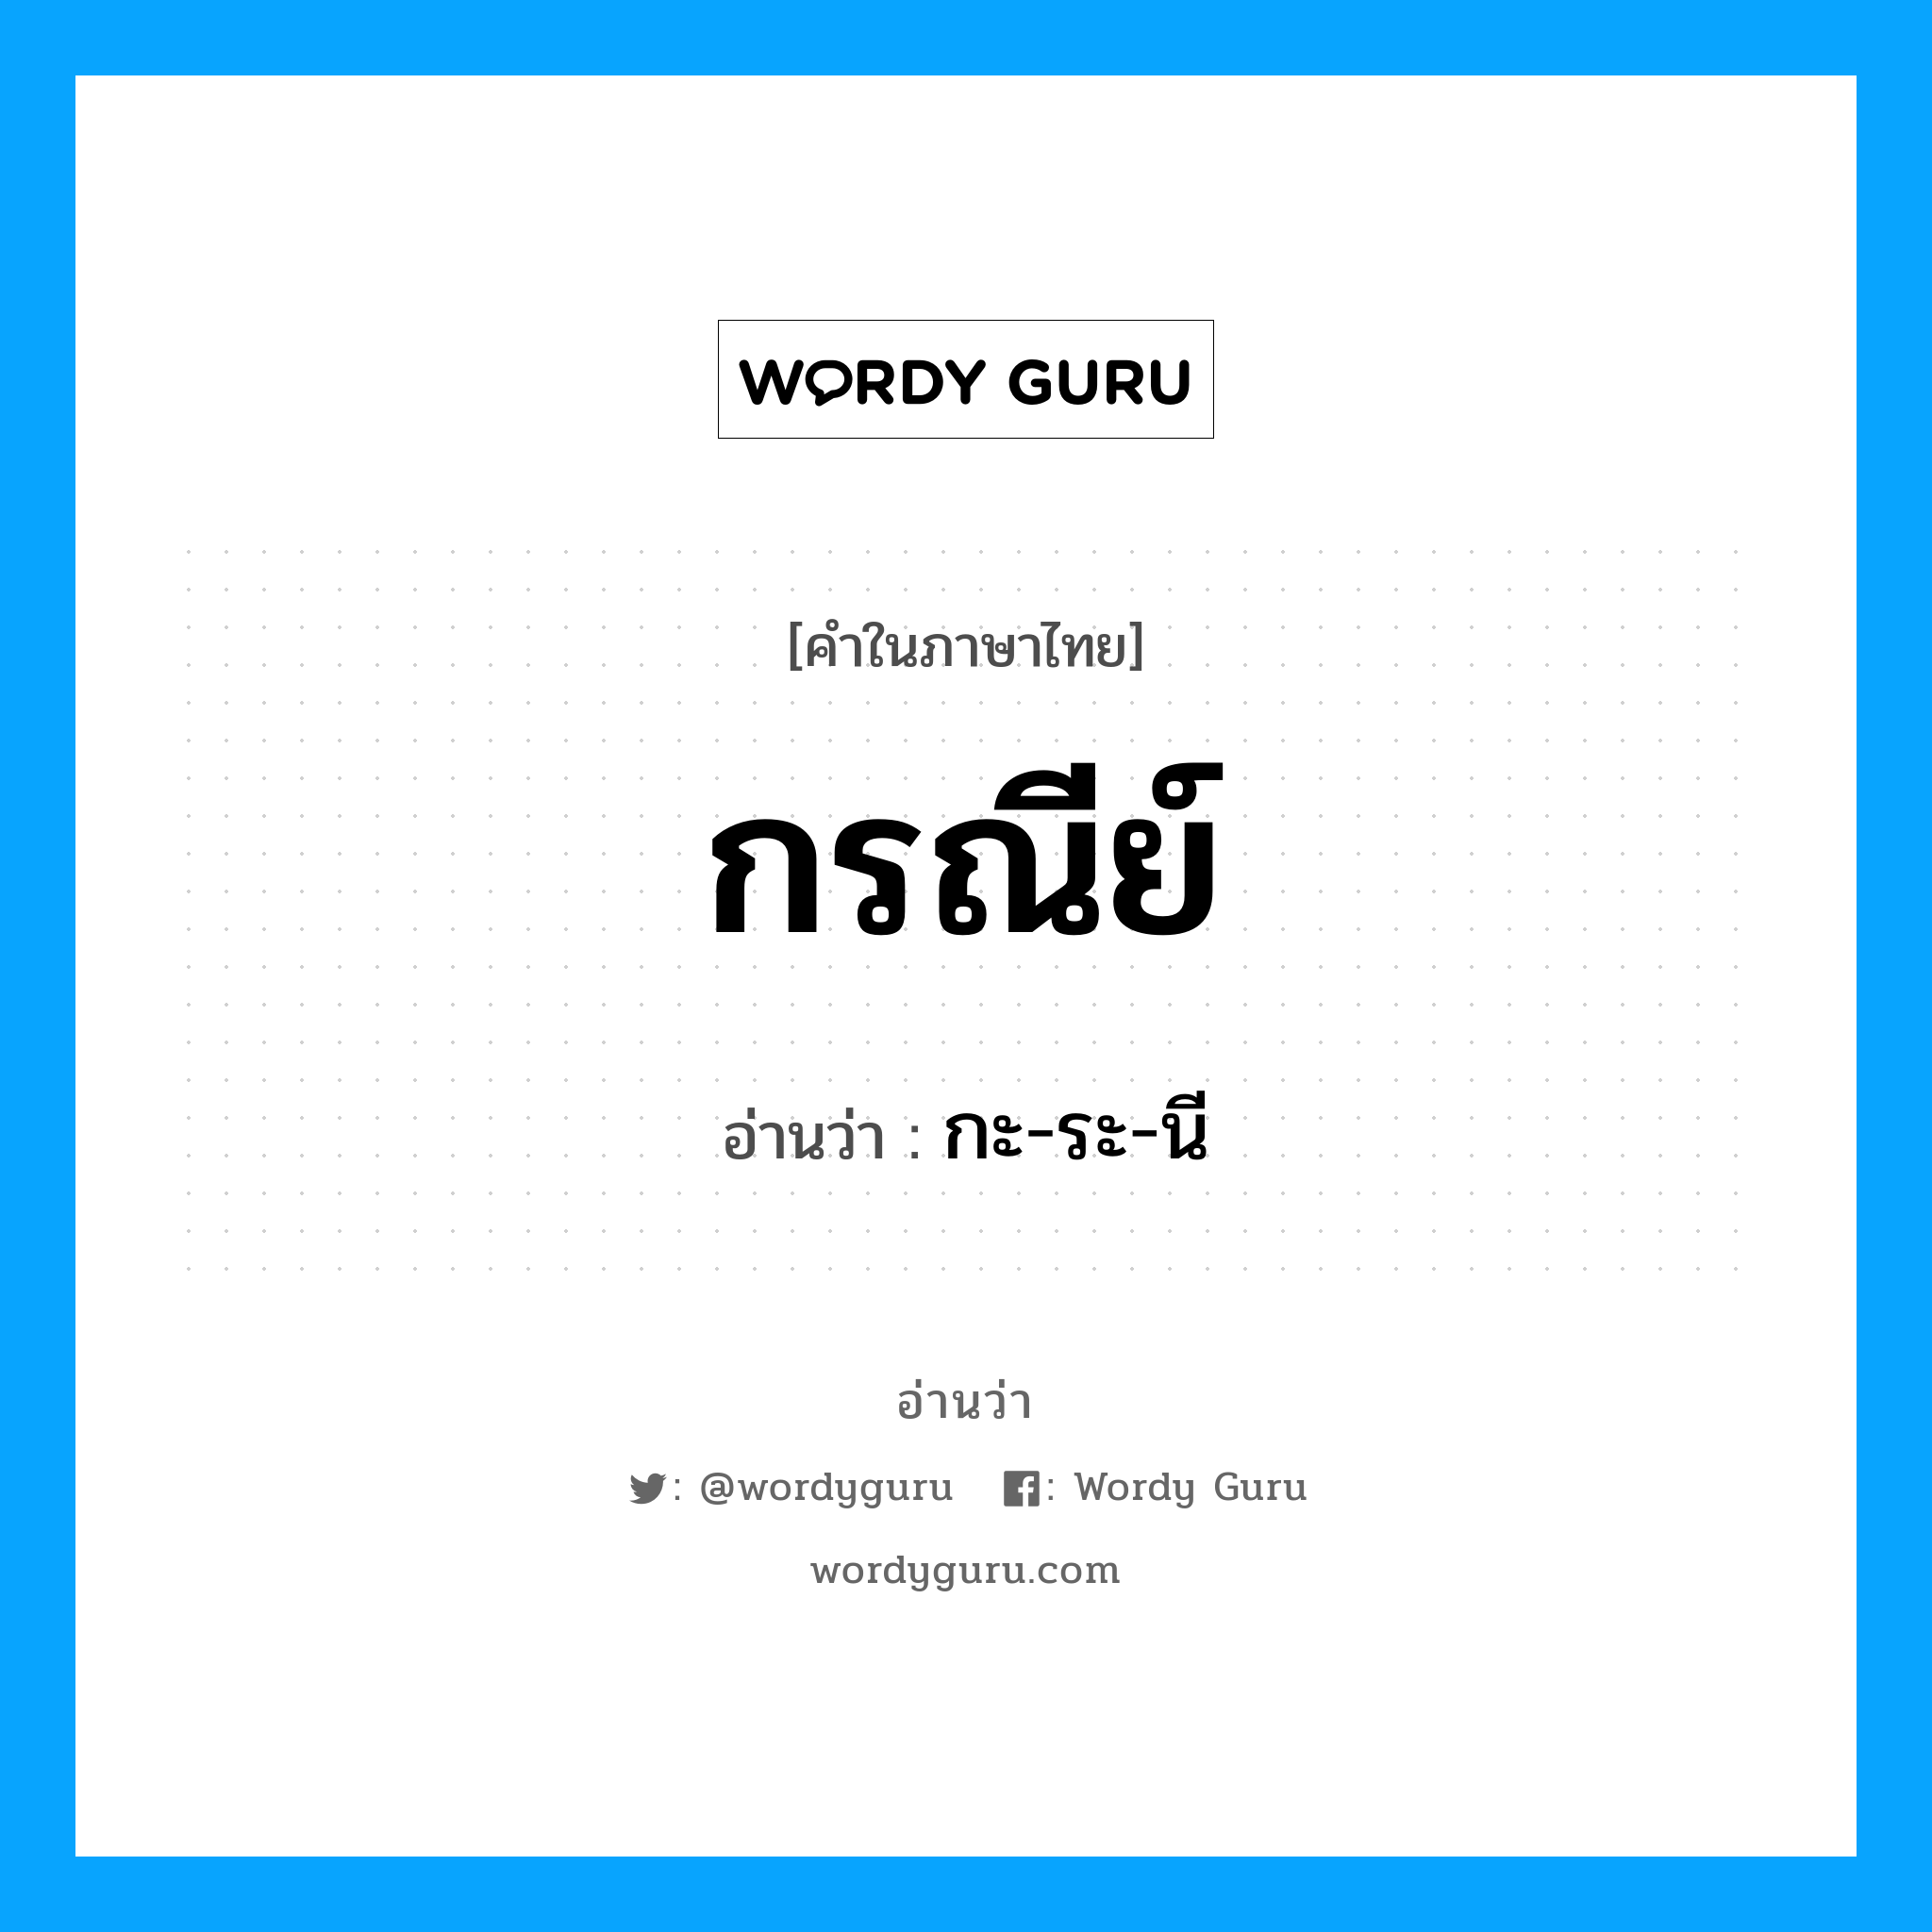 กะ-ระ-นี เป็นคำอ่านของคำไหน?, คำในภาษาไทย กะ-ระ-นี อ่านว่า กรณีย์